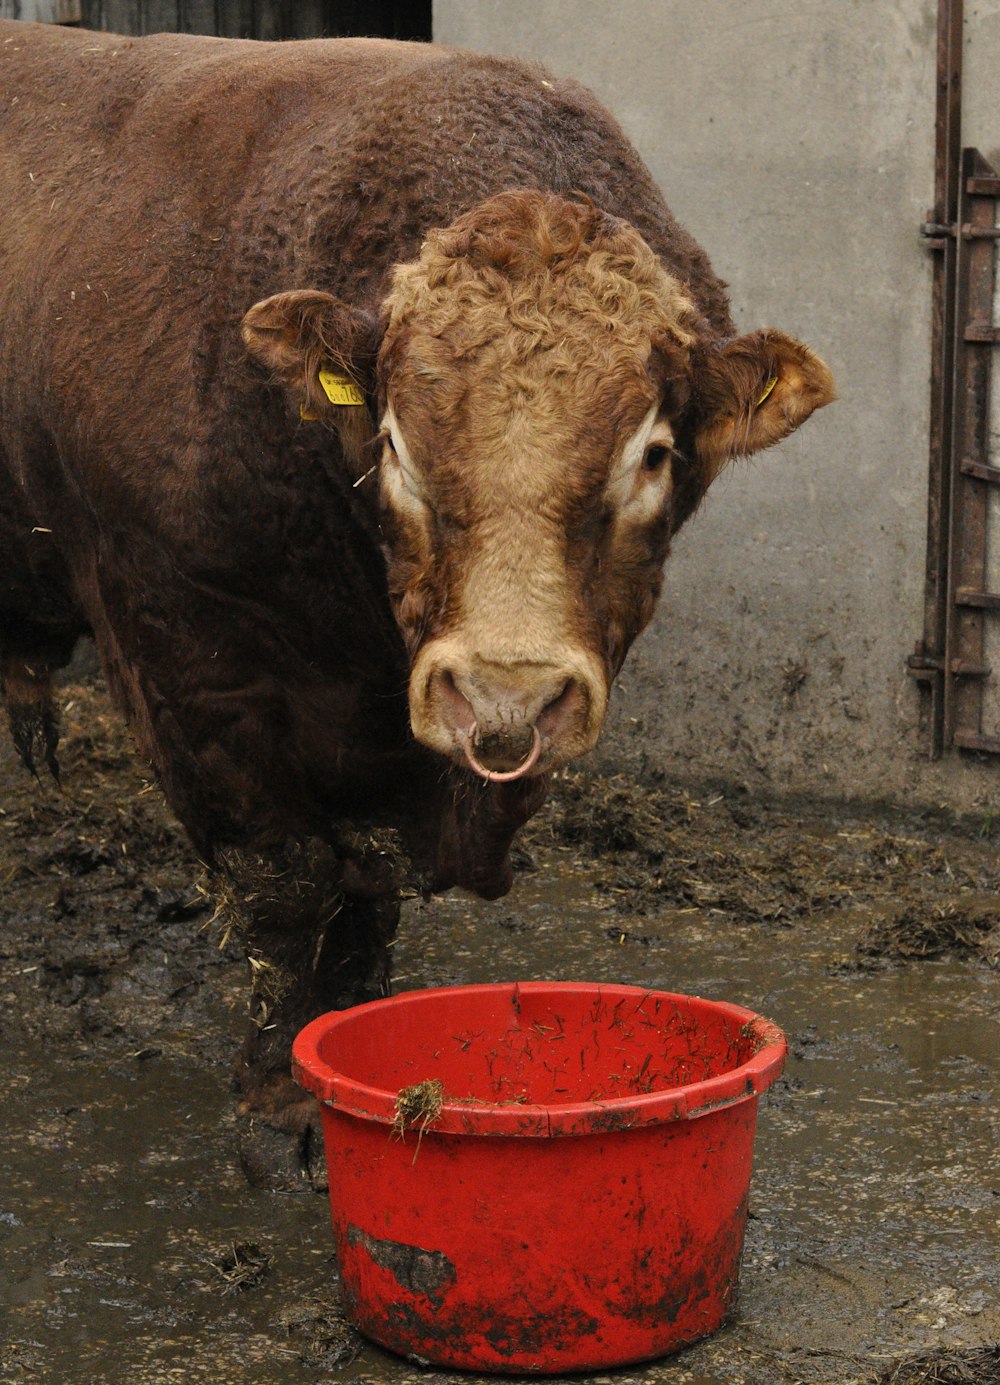 vaca marrom comendo no balde de plástico vermelho